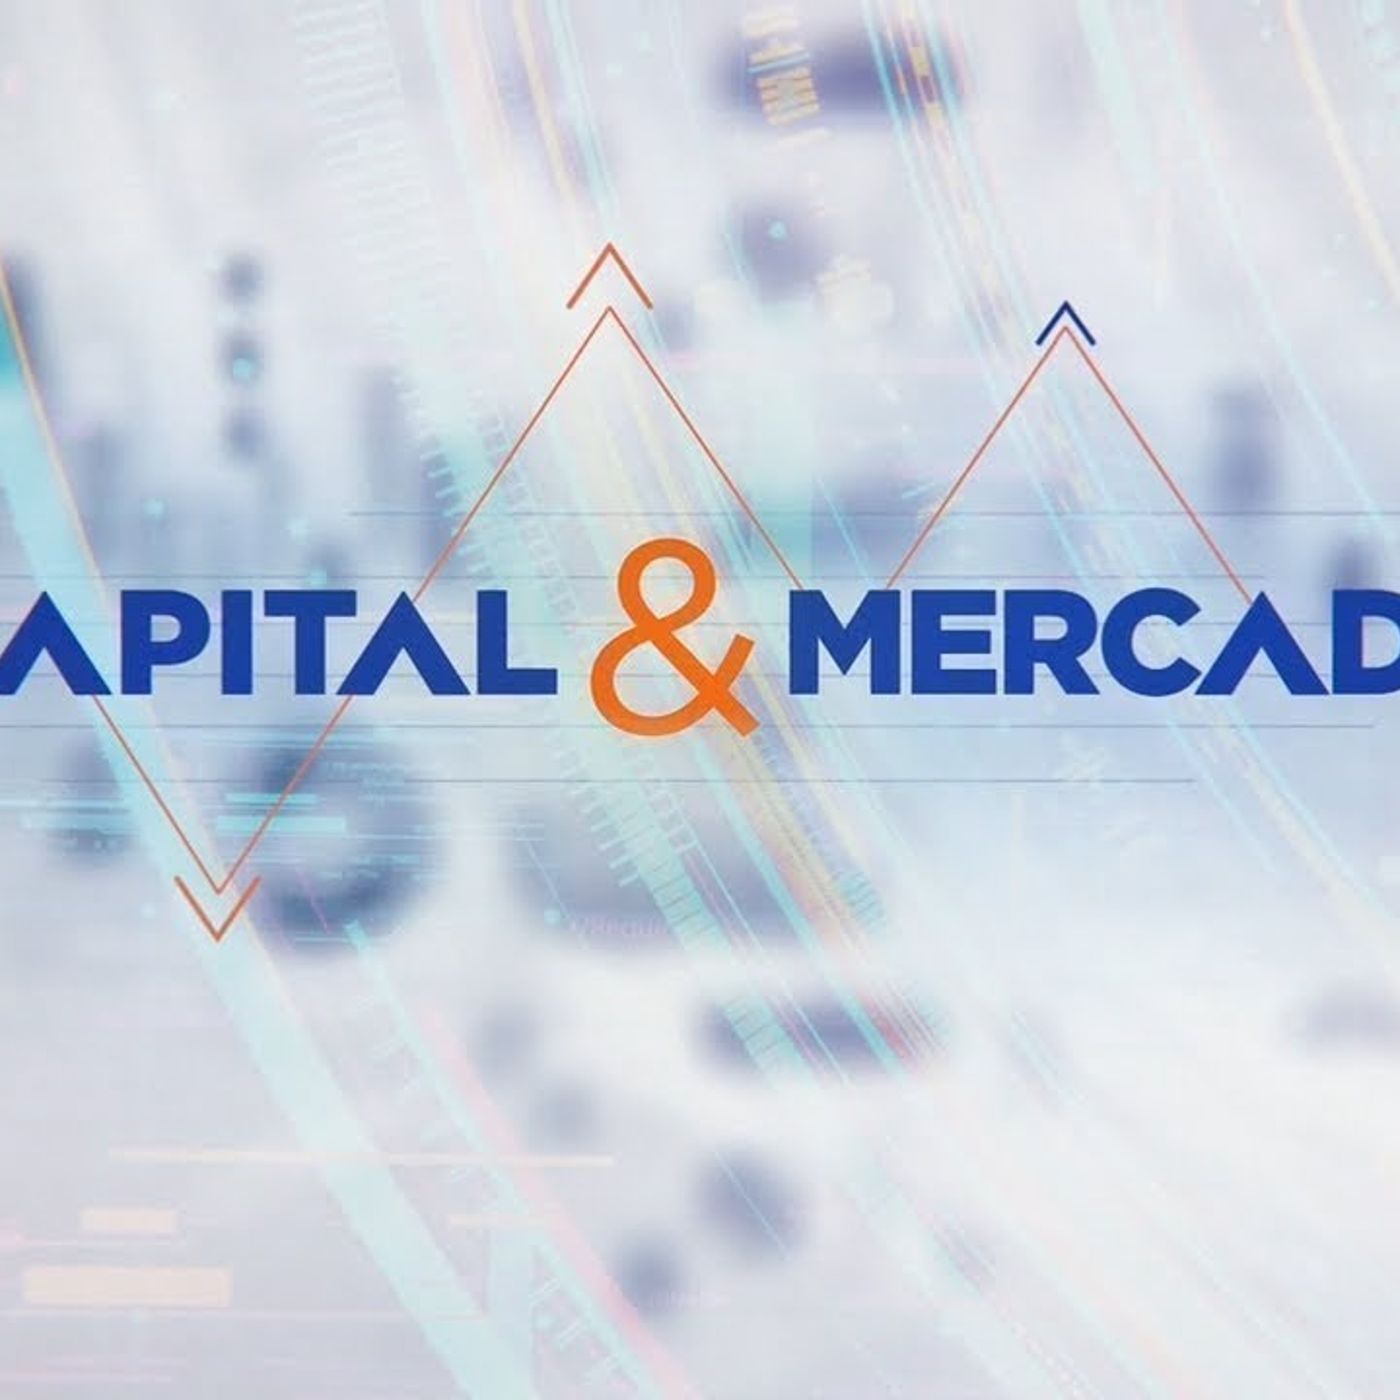 Capital & Mercado - Julia Rueff, vice-presidente de marketplace no Mercado Livre